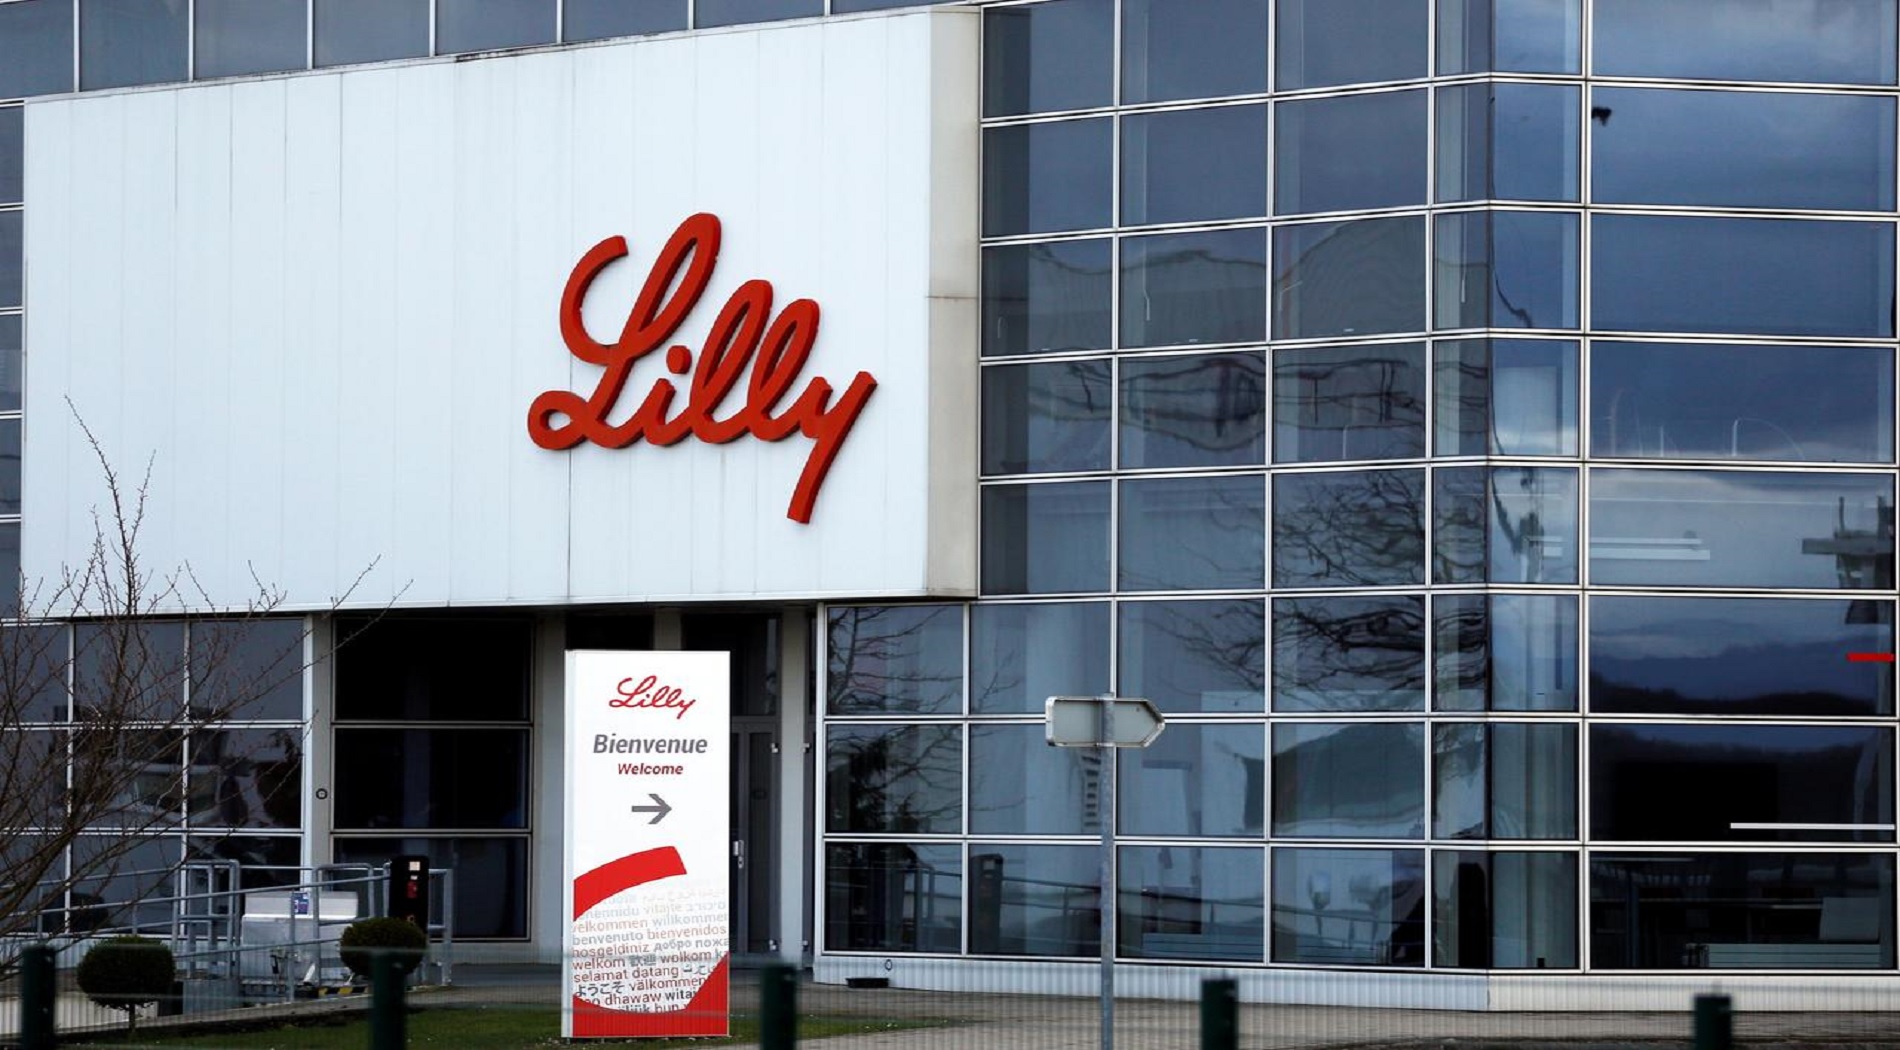 Νέα έγκριση για το Trulicity της Eli Lilly τη βάζει δυνατά στον ανταγωνισμό